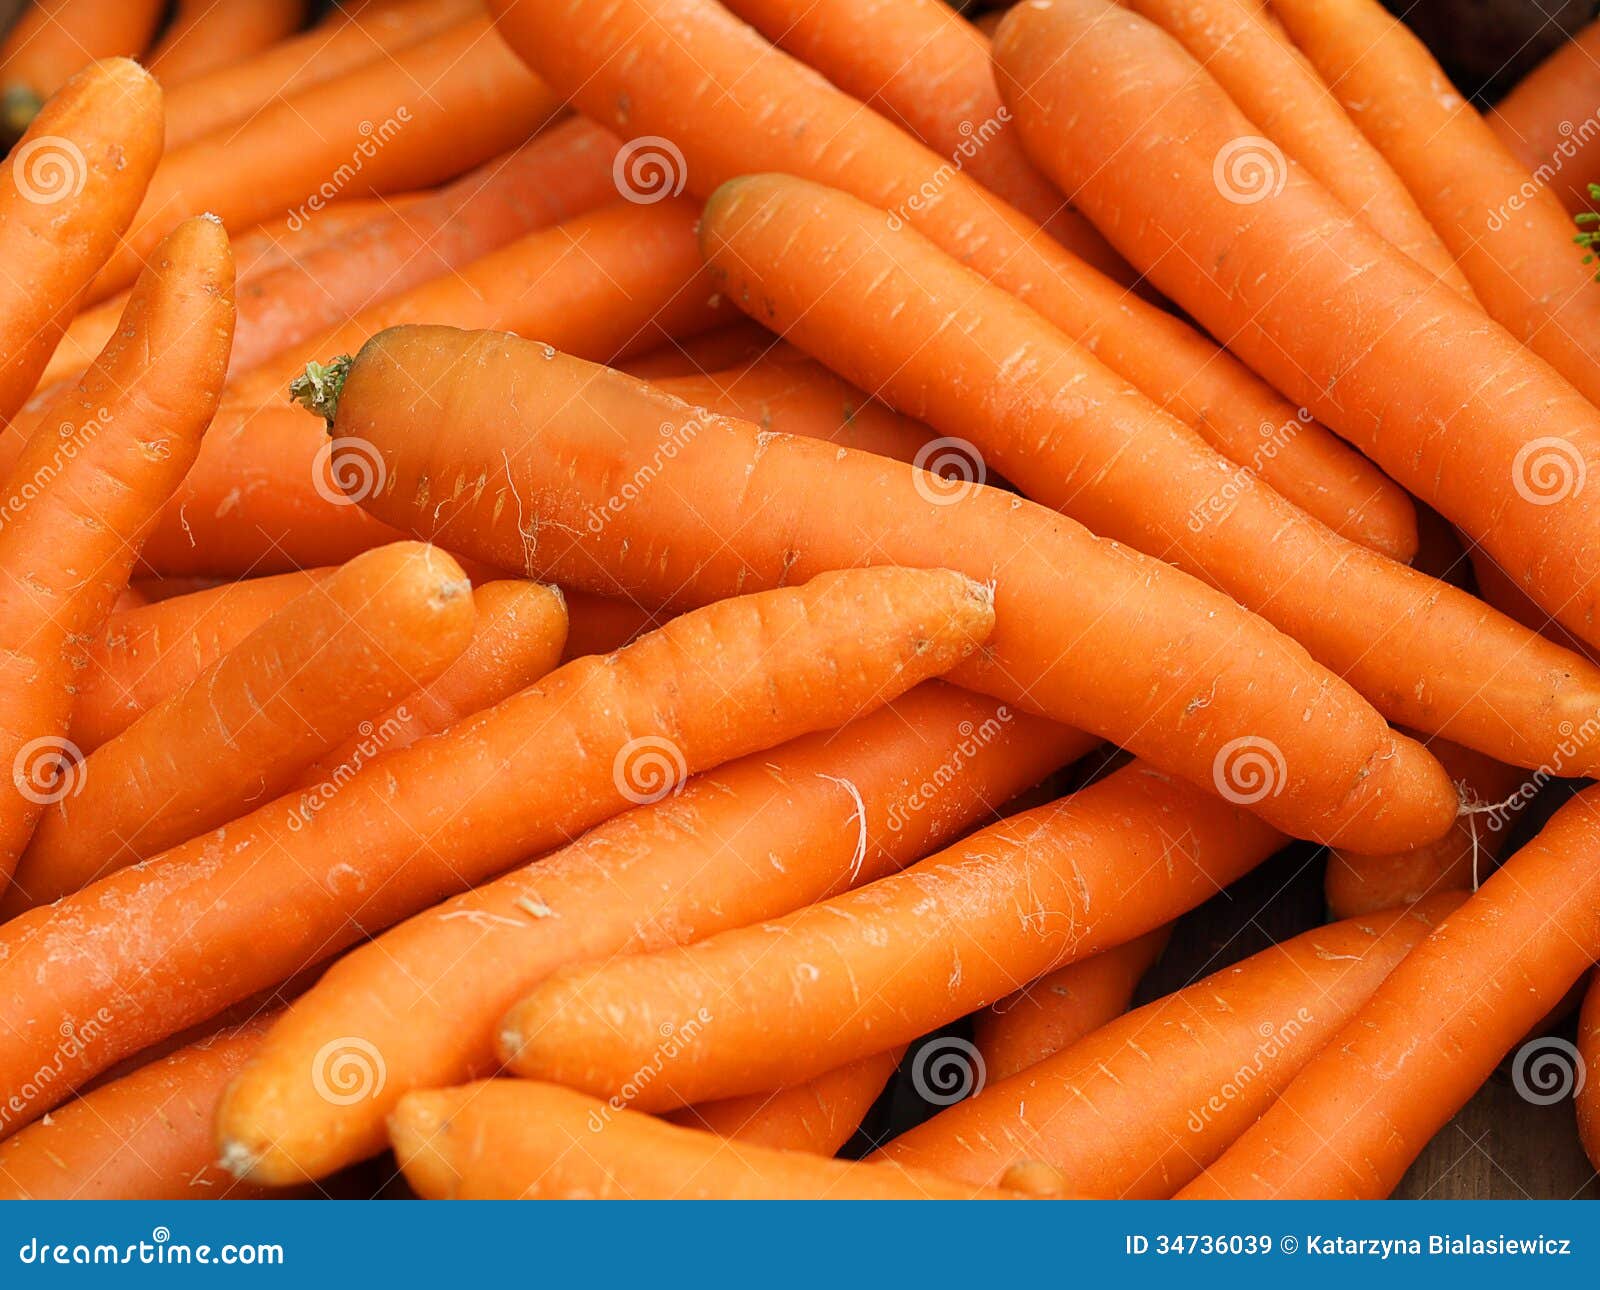 carrot pile